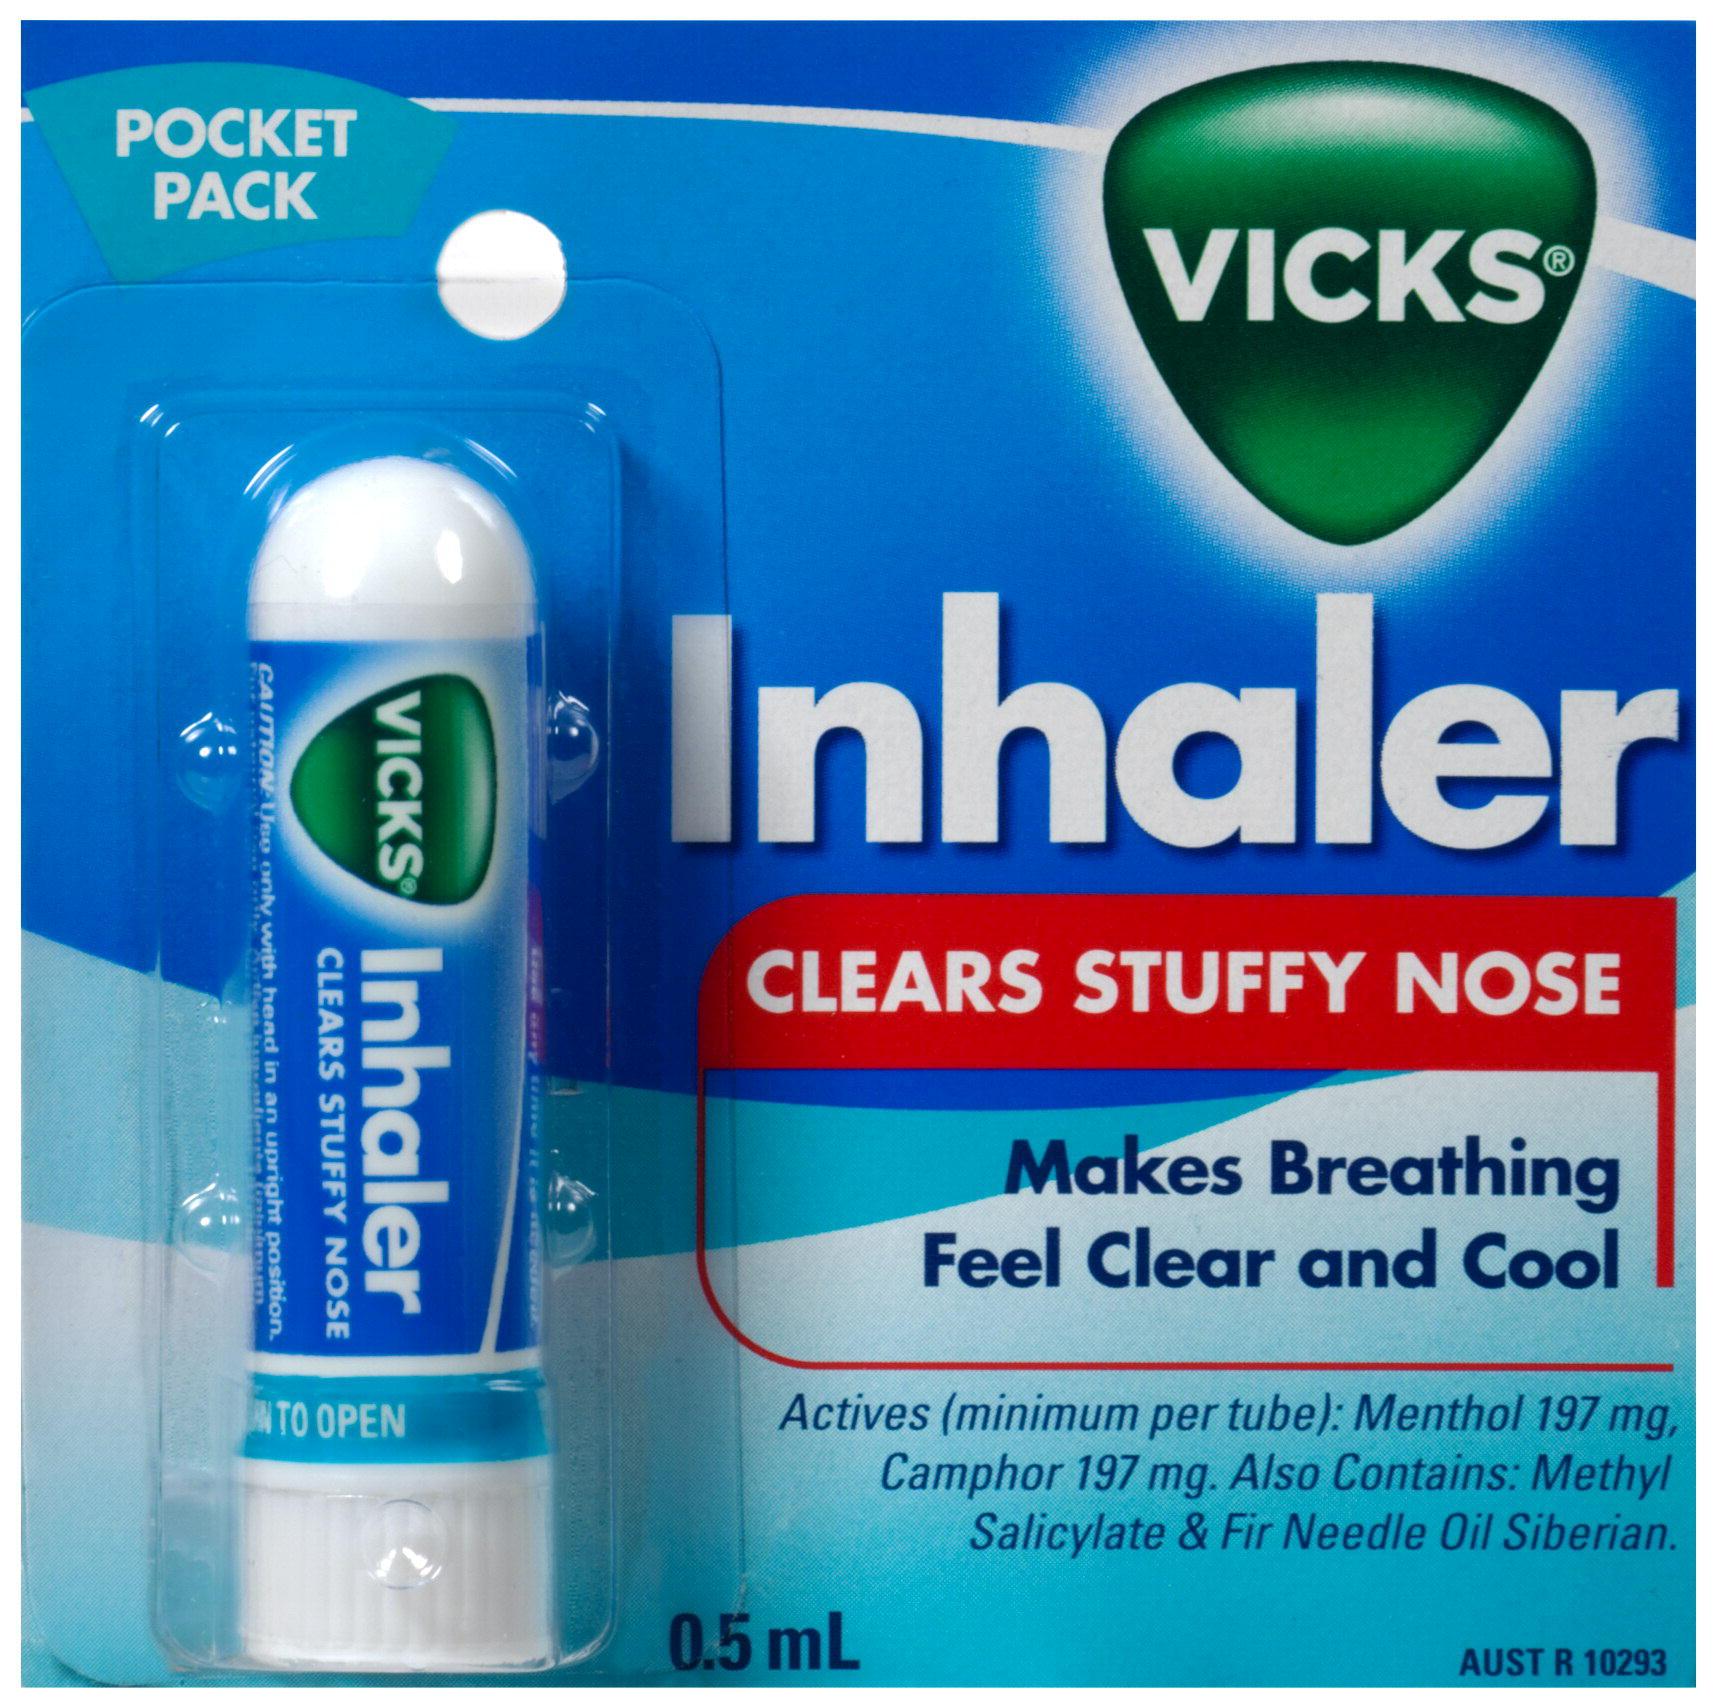 What stores sell Vicks nasal spray?